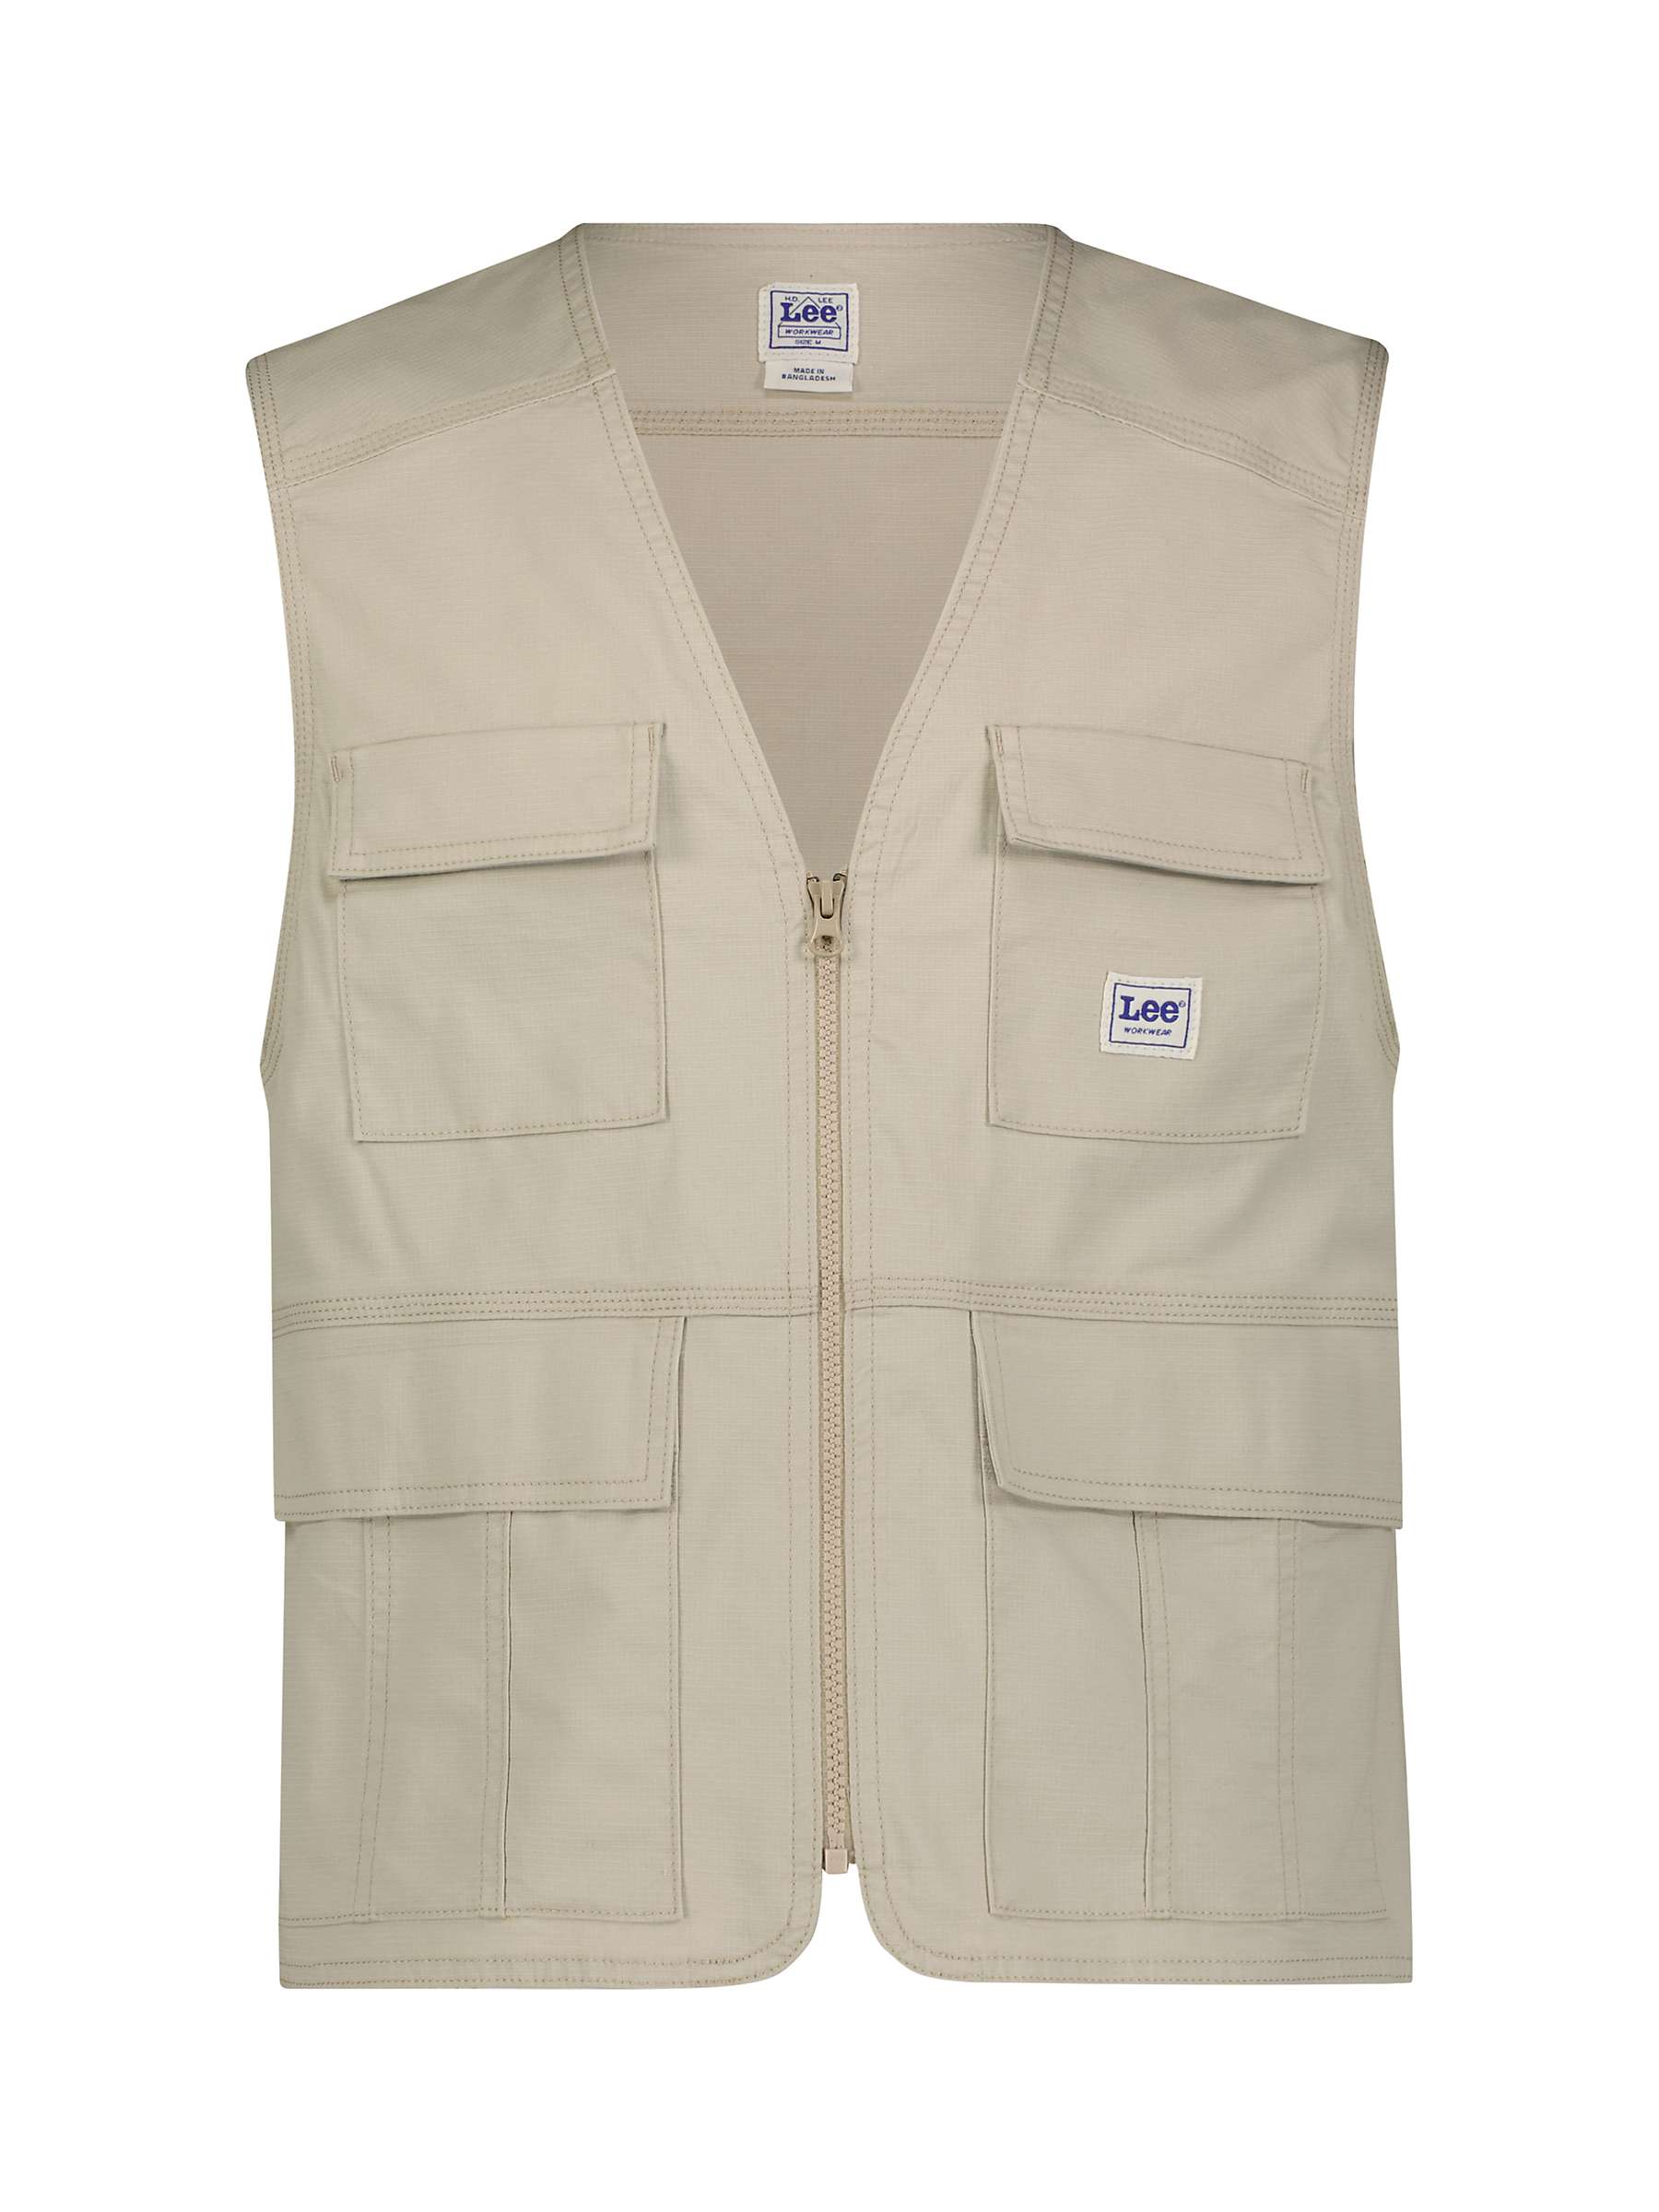 Buy Lee Utility Vest Jacket, Stone Online at johnlewis.com